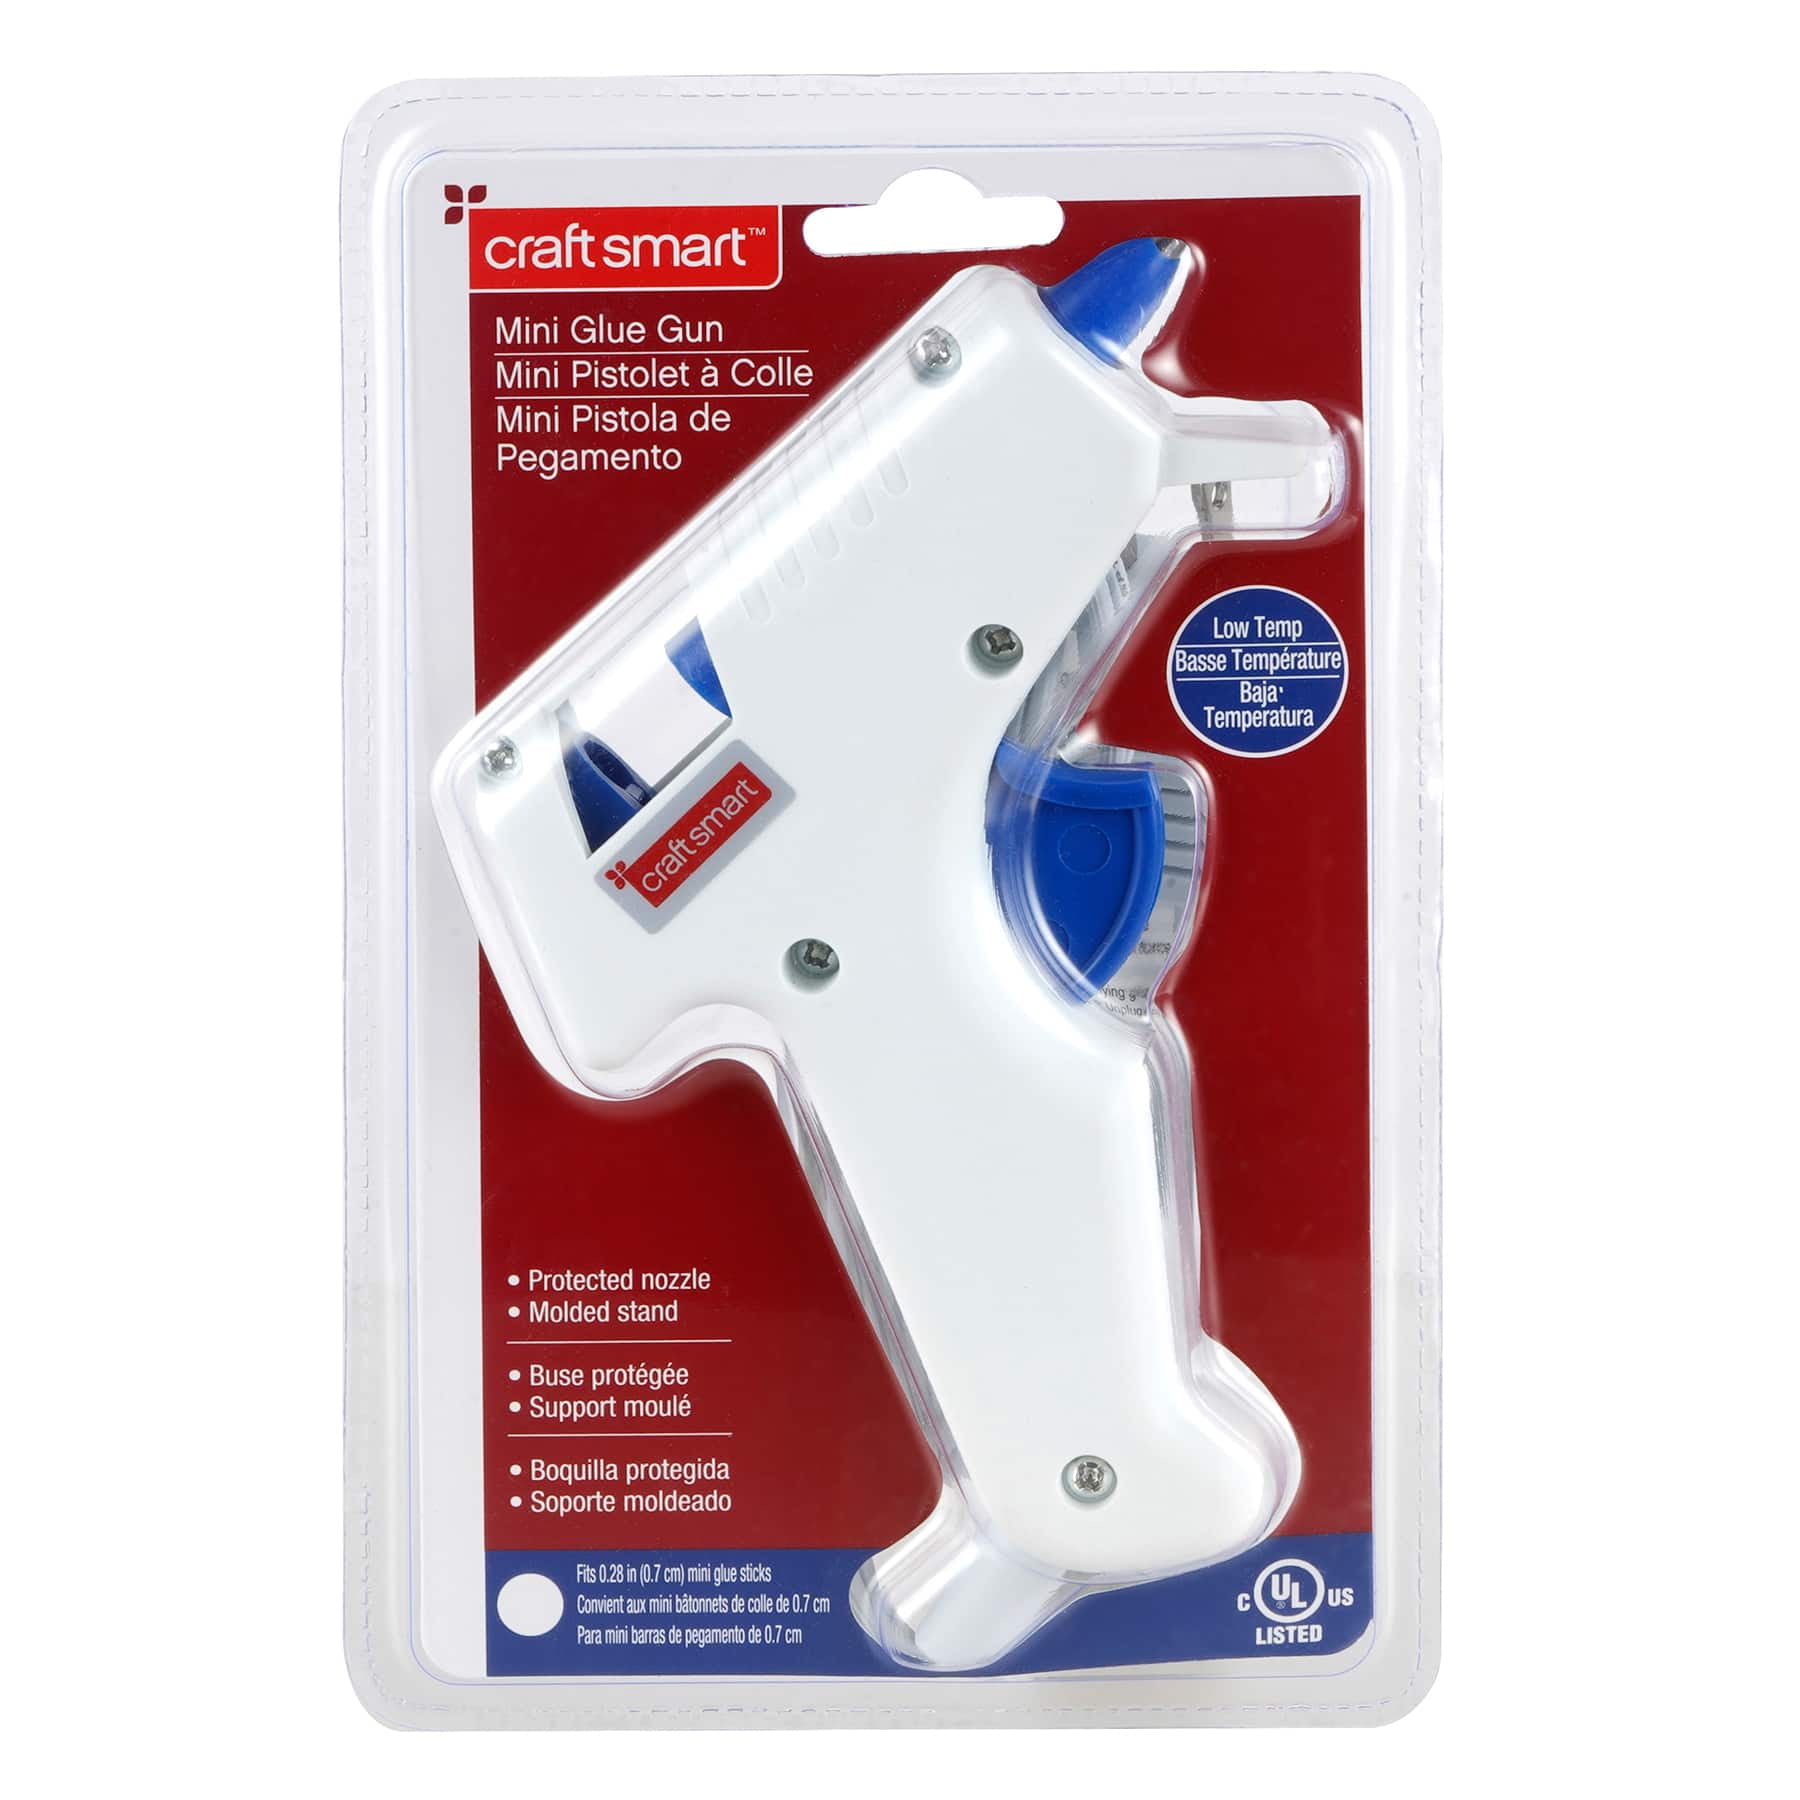 24 Pack: Low Temp Mini Glue Gun by Craft Smart™ 